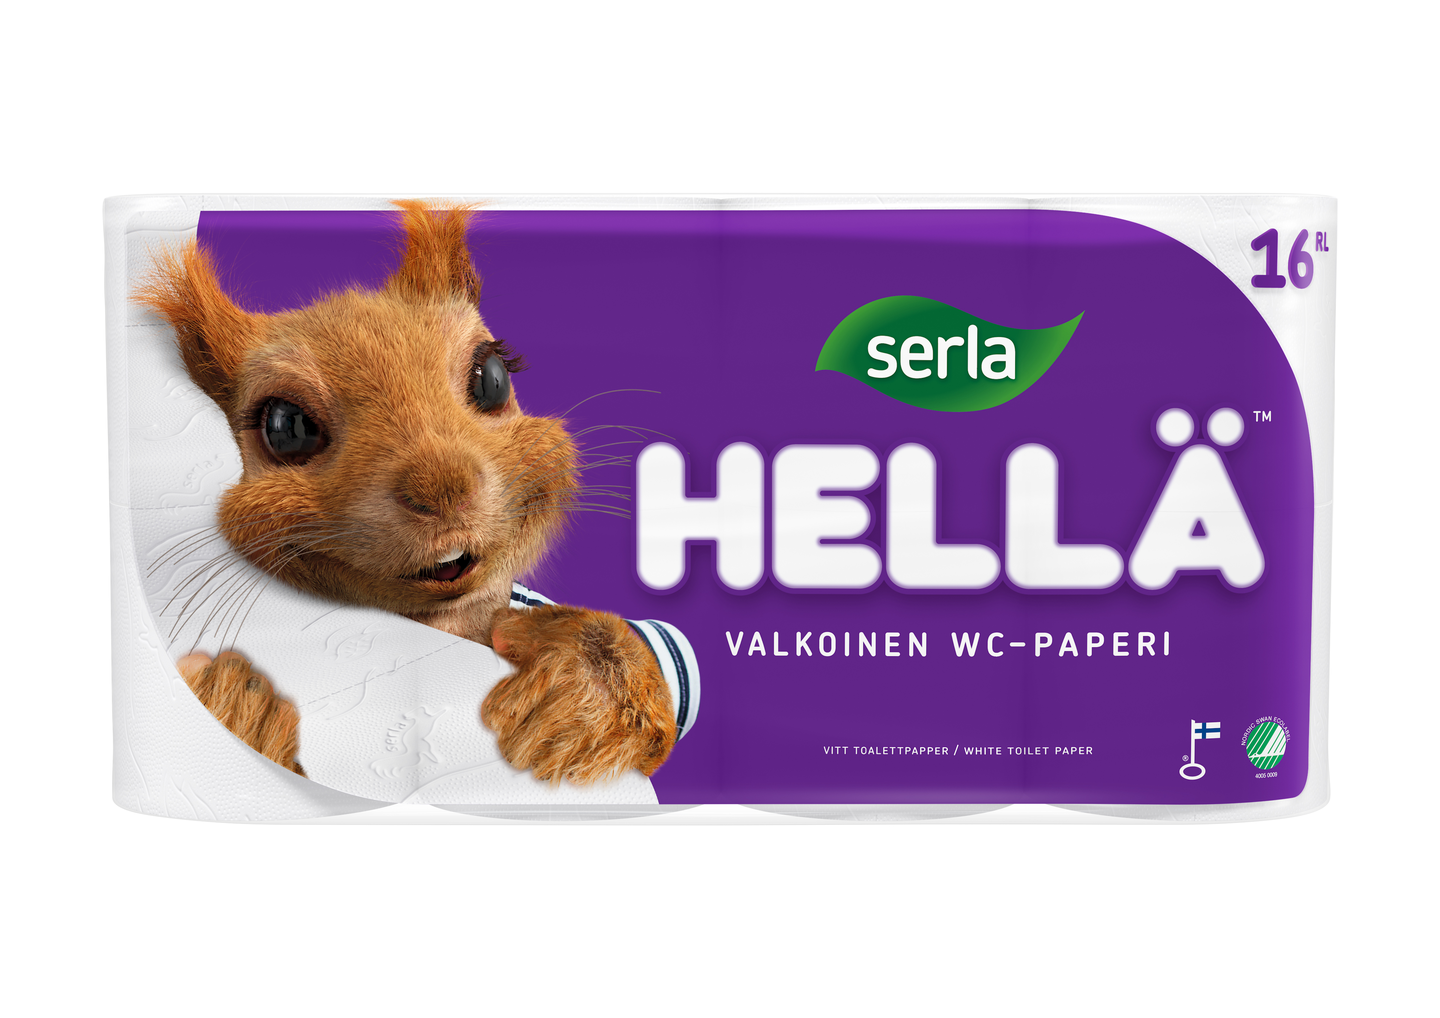 Serla hellä wc-paperi 16rl valkoinen